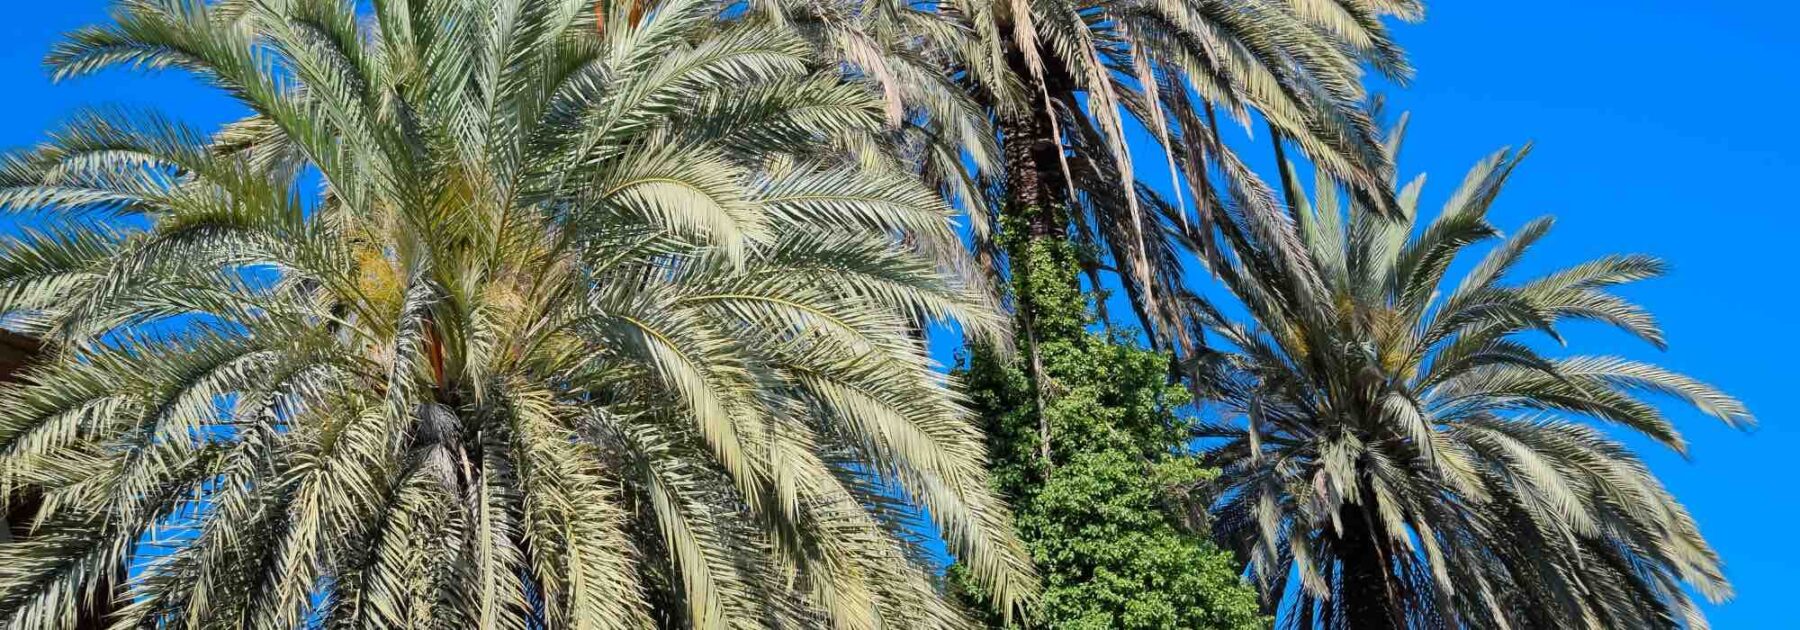 Nématodes contre les ravageurs du palmier : pourquoi et comment les utiliser au jardin ? 